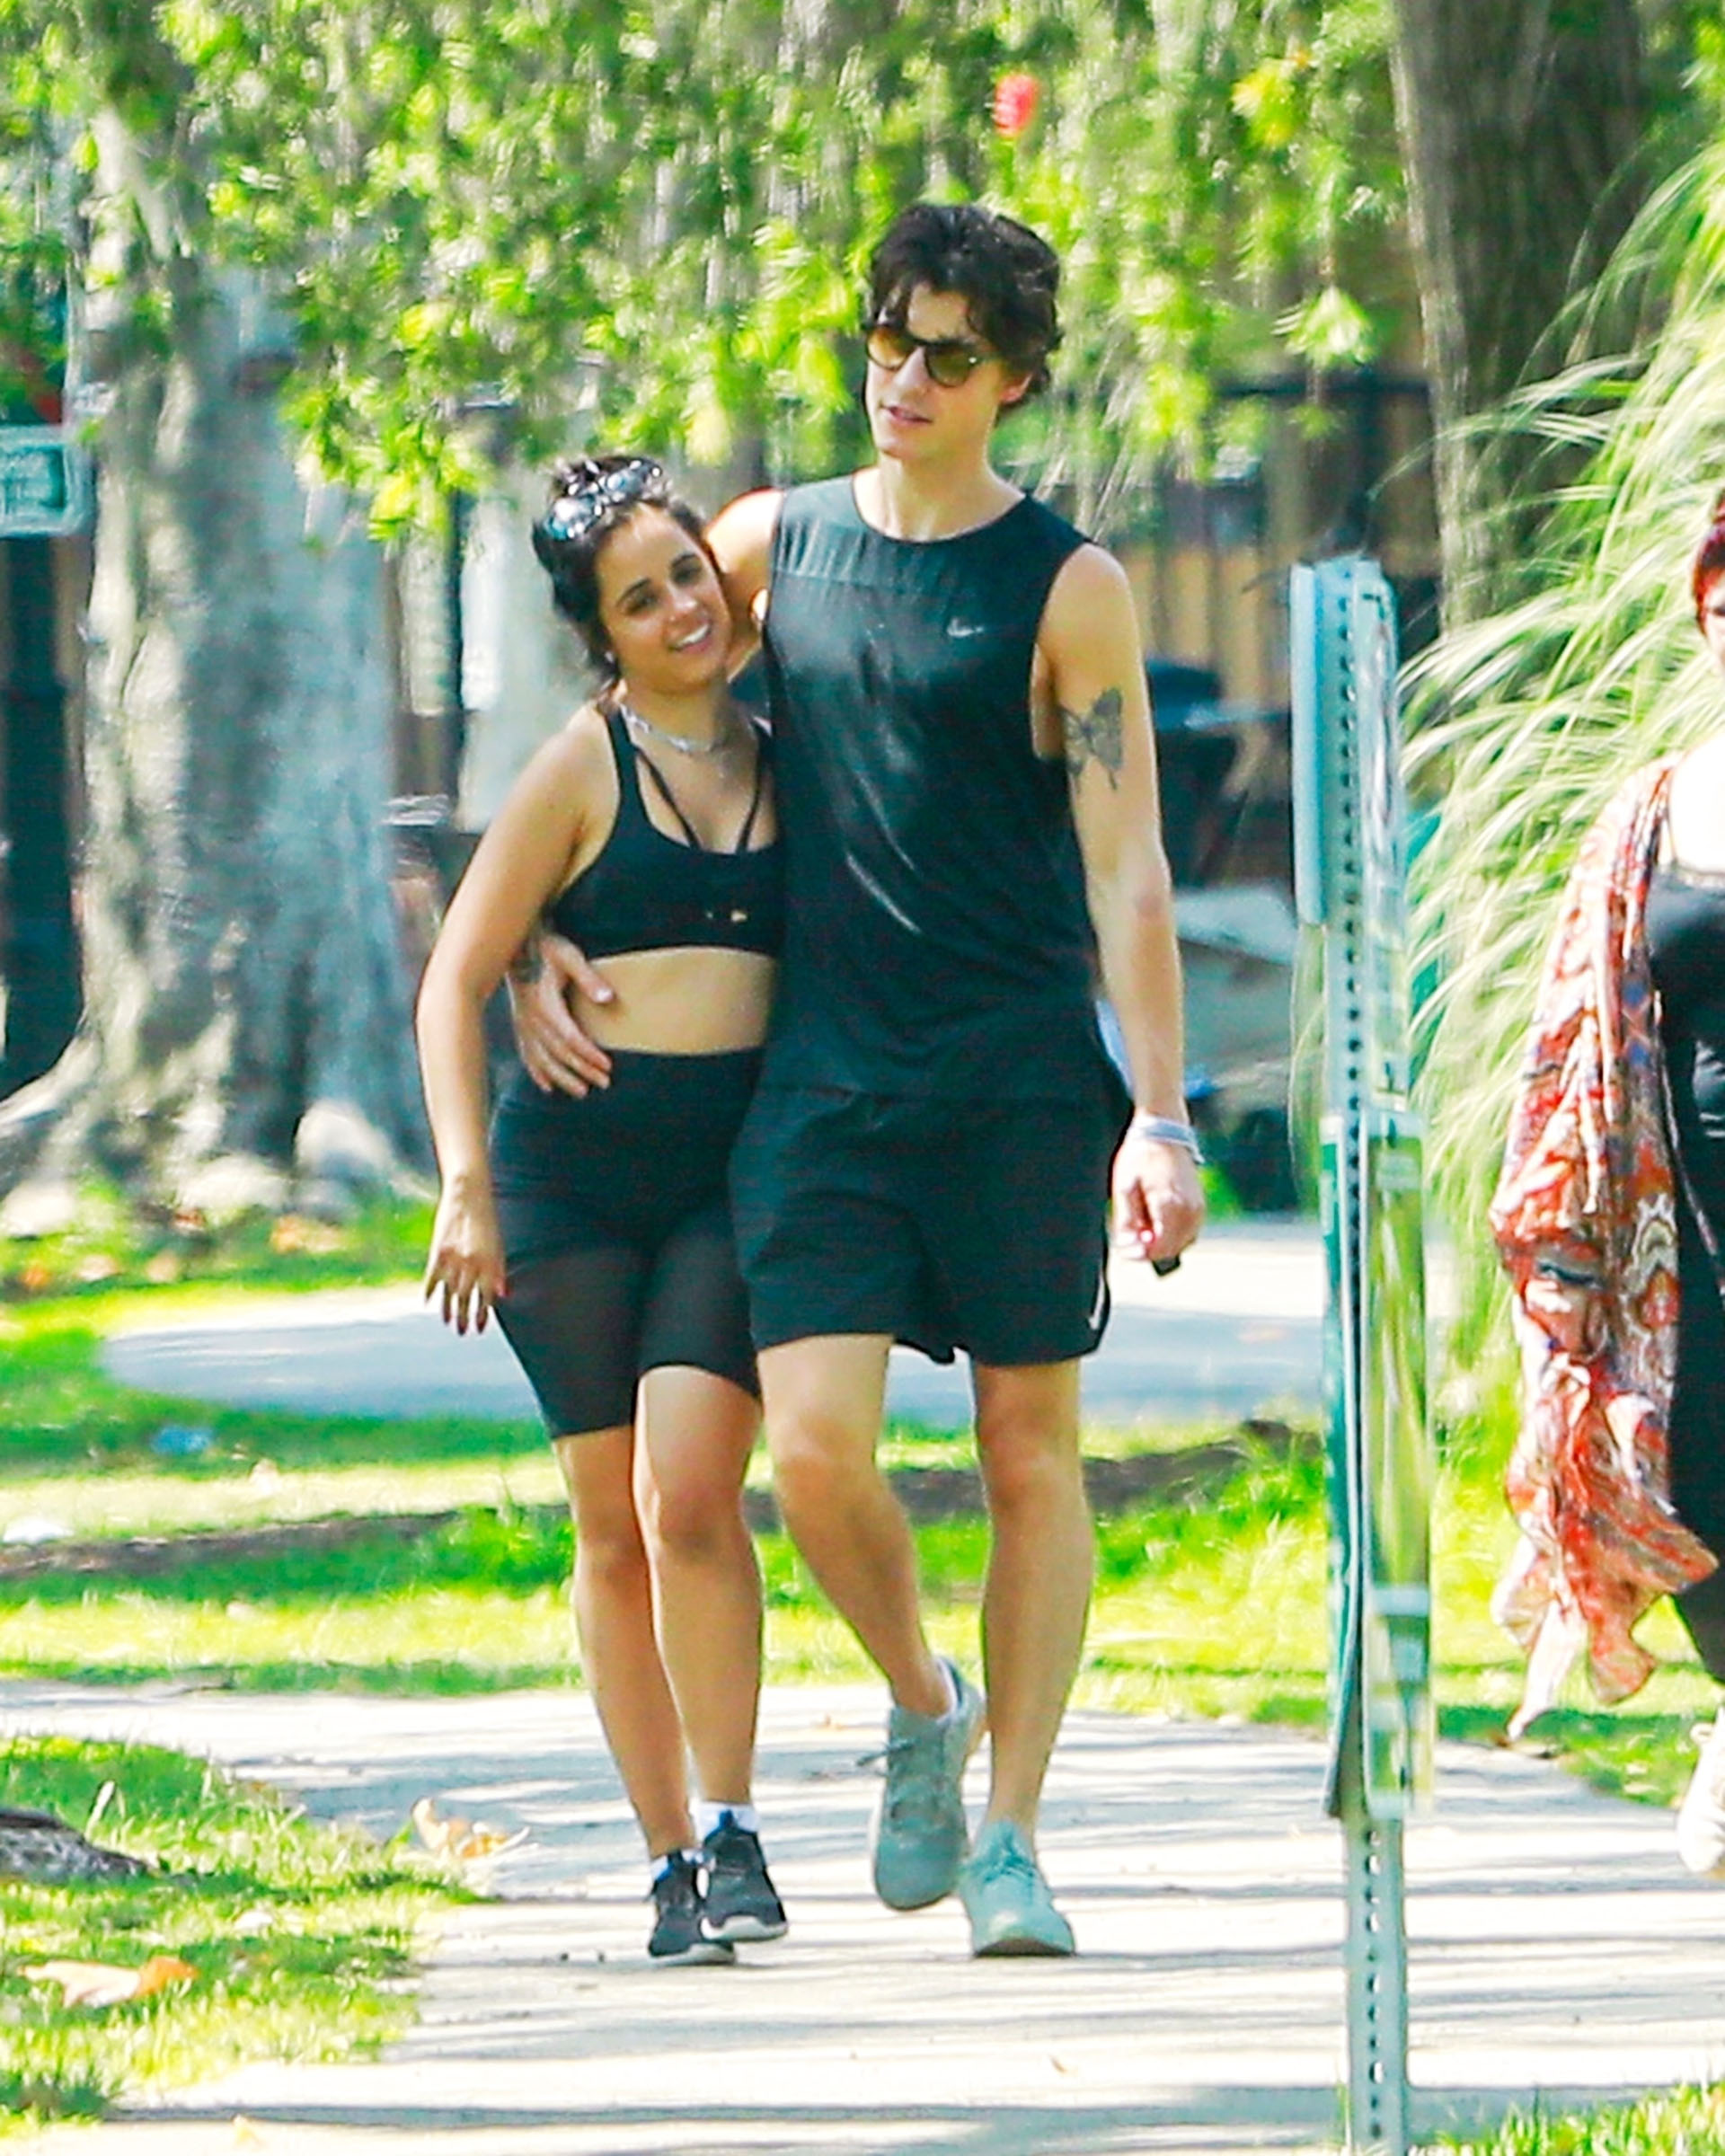 Entre el amor y el deporte. Camila Cabello y Shawn Mendes realizaron una caminata en Beverly Hills acompañados por la madre de la cantante. Ambos lucieron un conjunto deportivo negro y se los vio abrazados